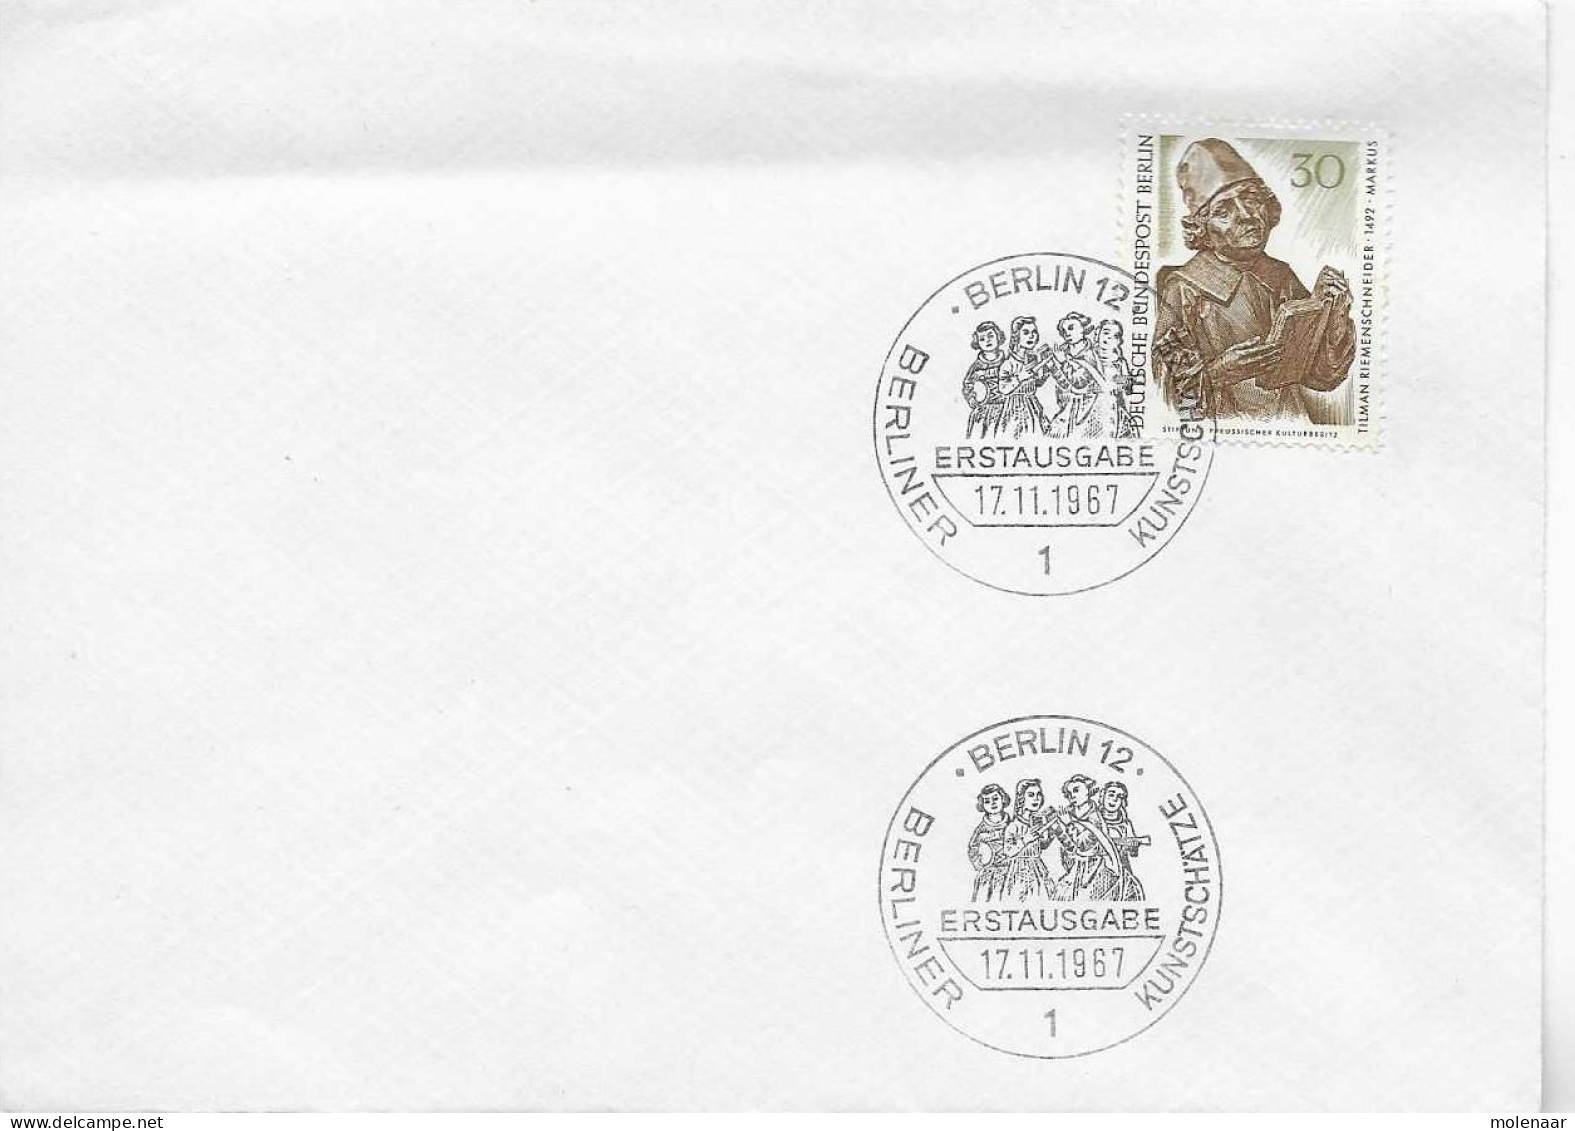 Postzegels > Europa > Duitsland > Berlijn > 1e Dag FDC (brieven) > 1948-1970 Met No. 304 (17156) - 1948-1970